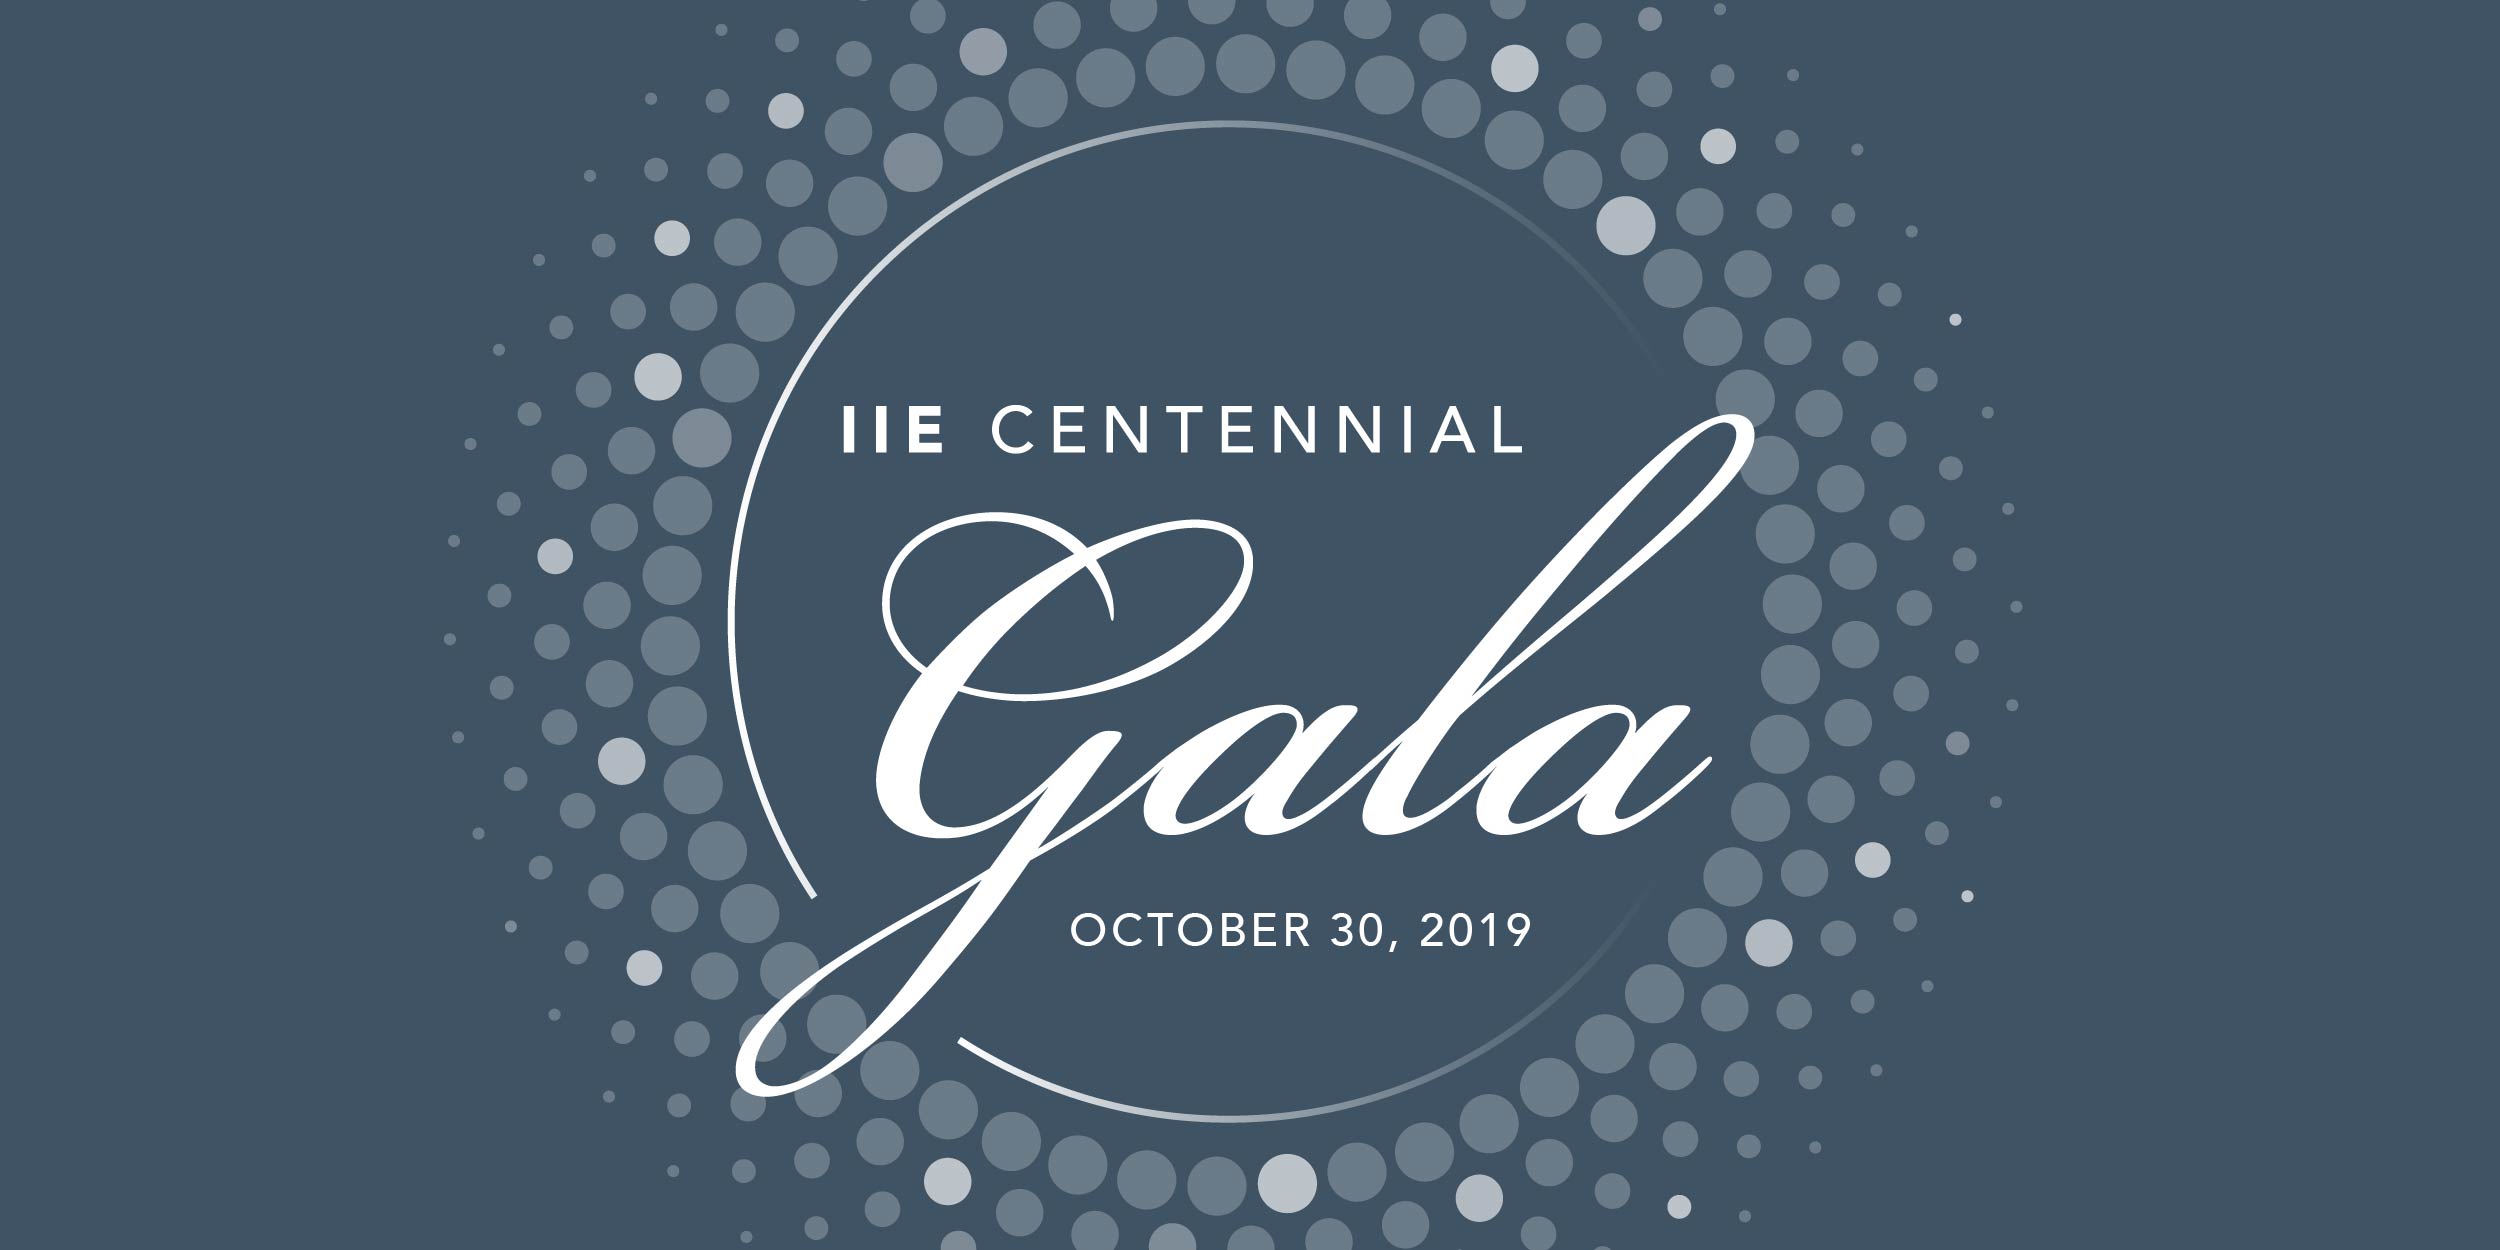 IIE 2019 Centennial Gala